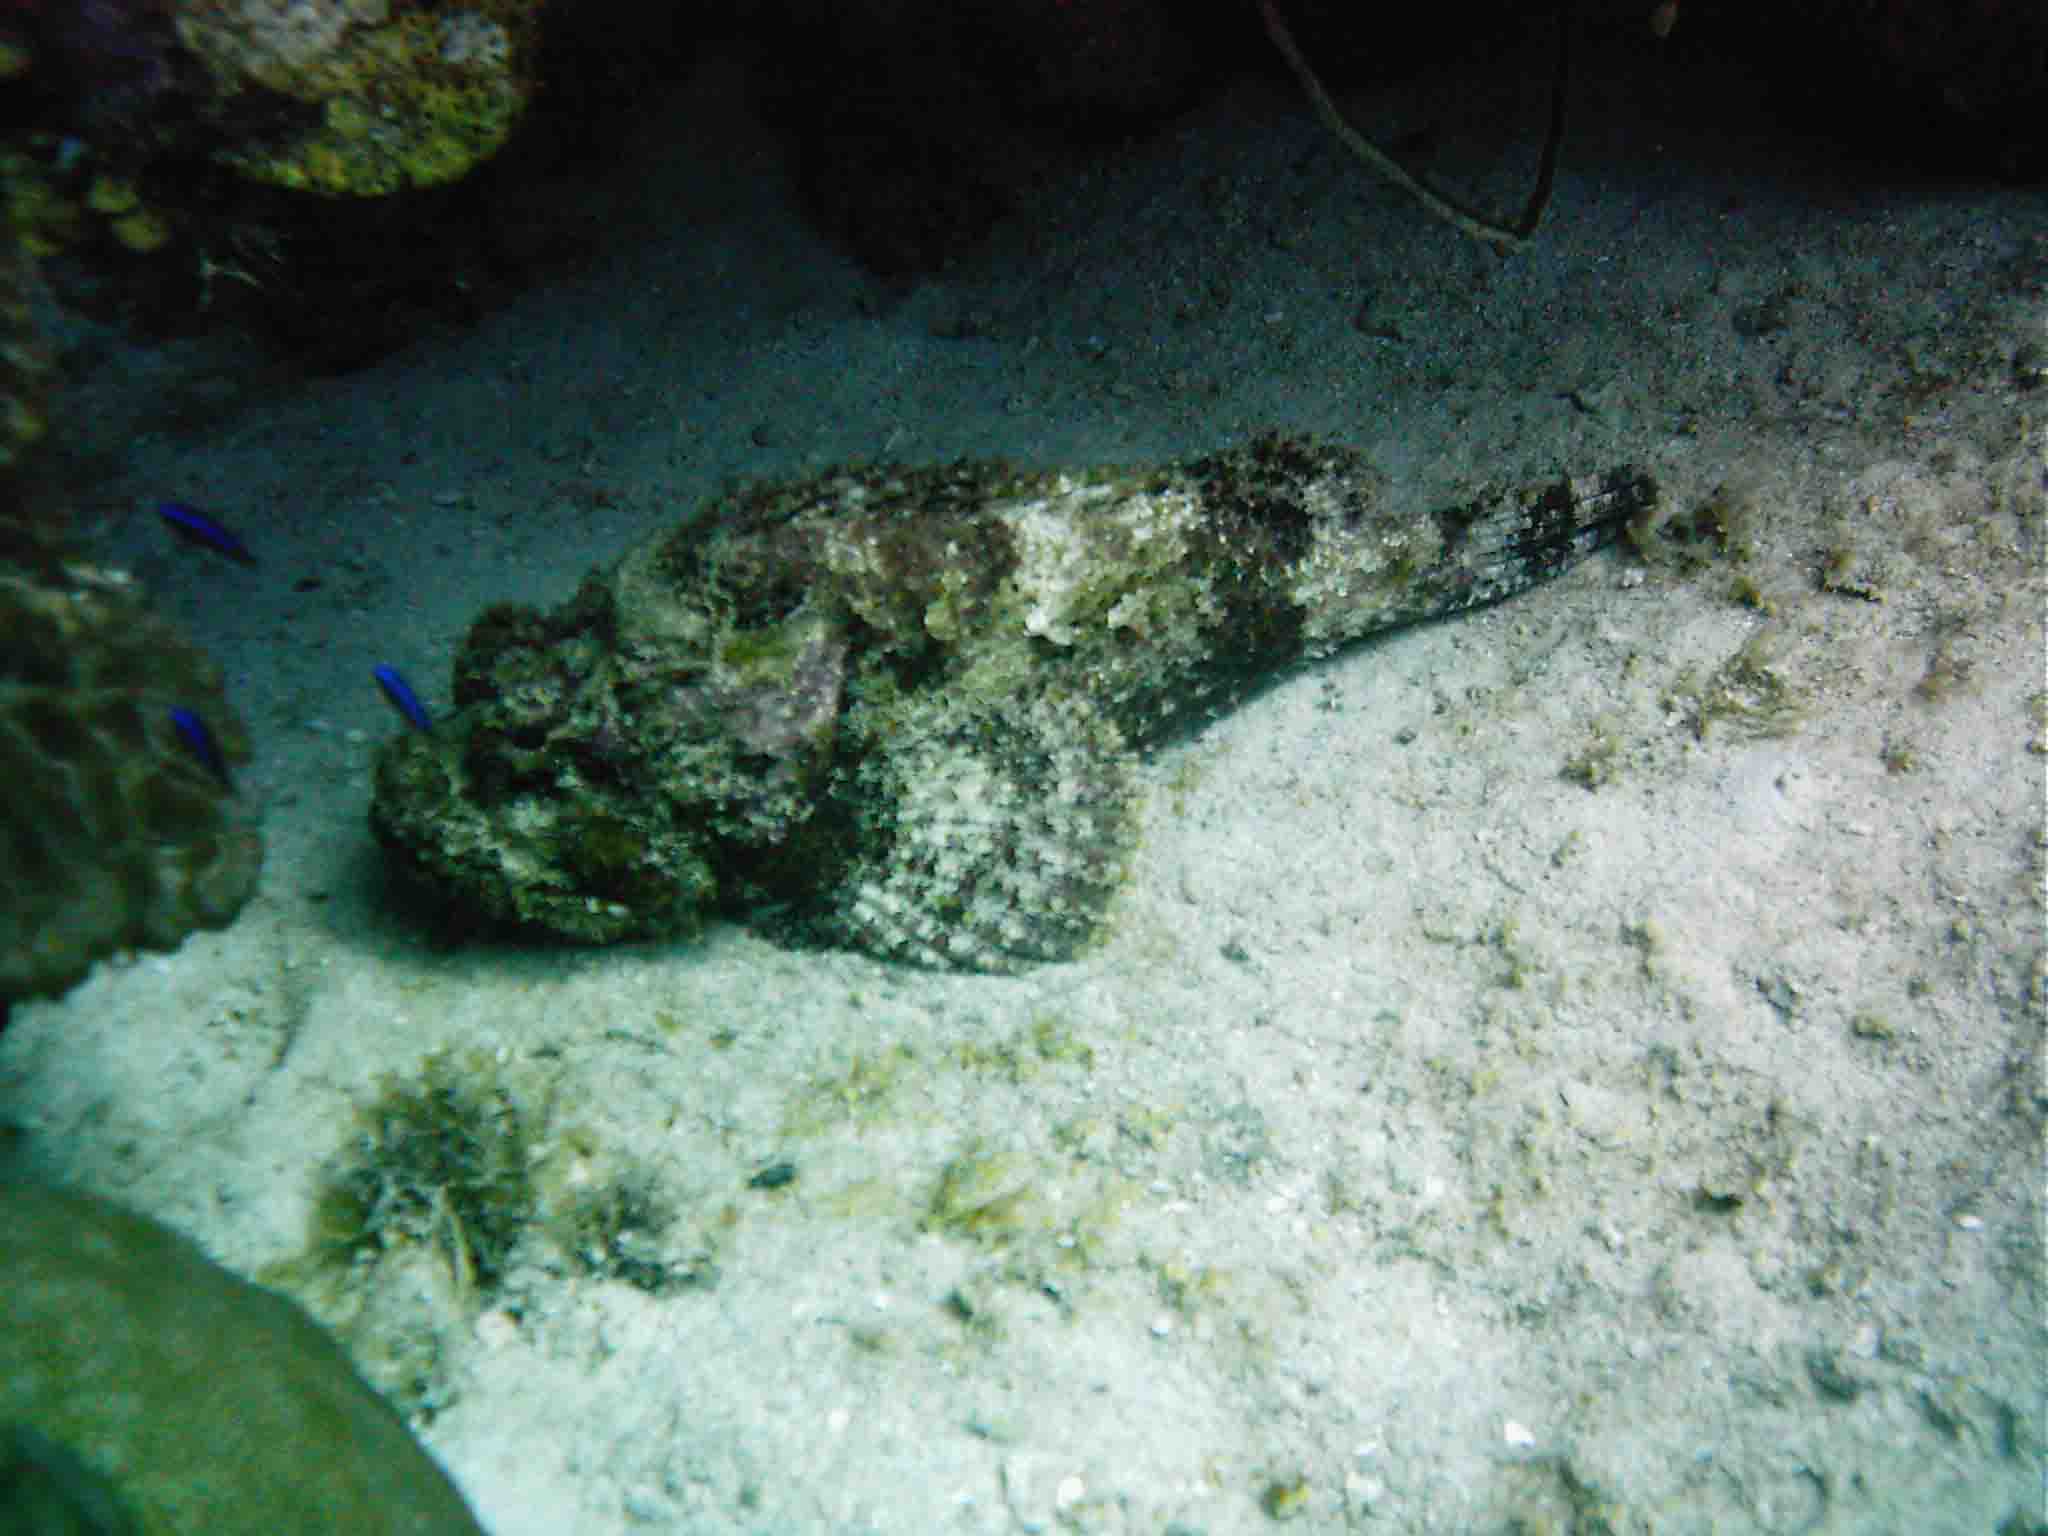 Curacao Rockfish